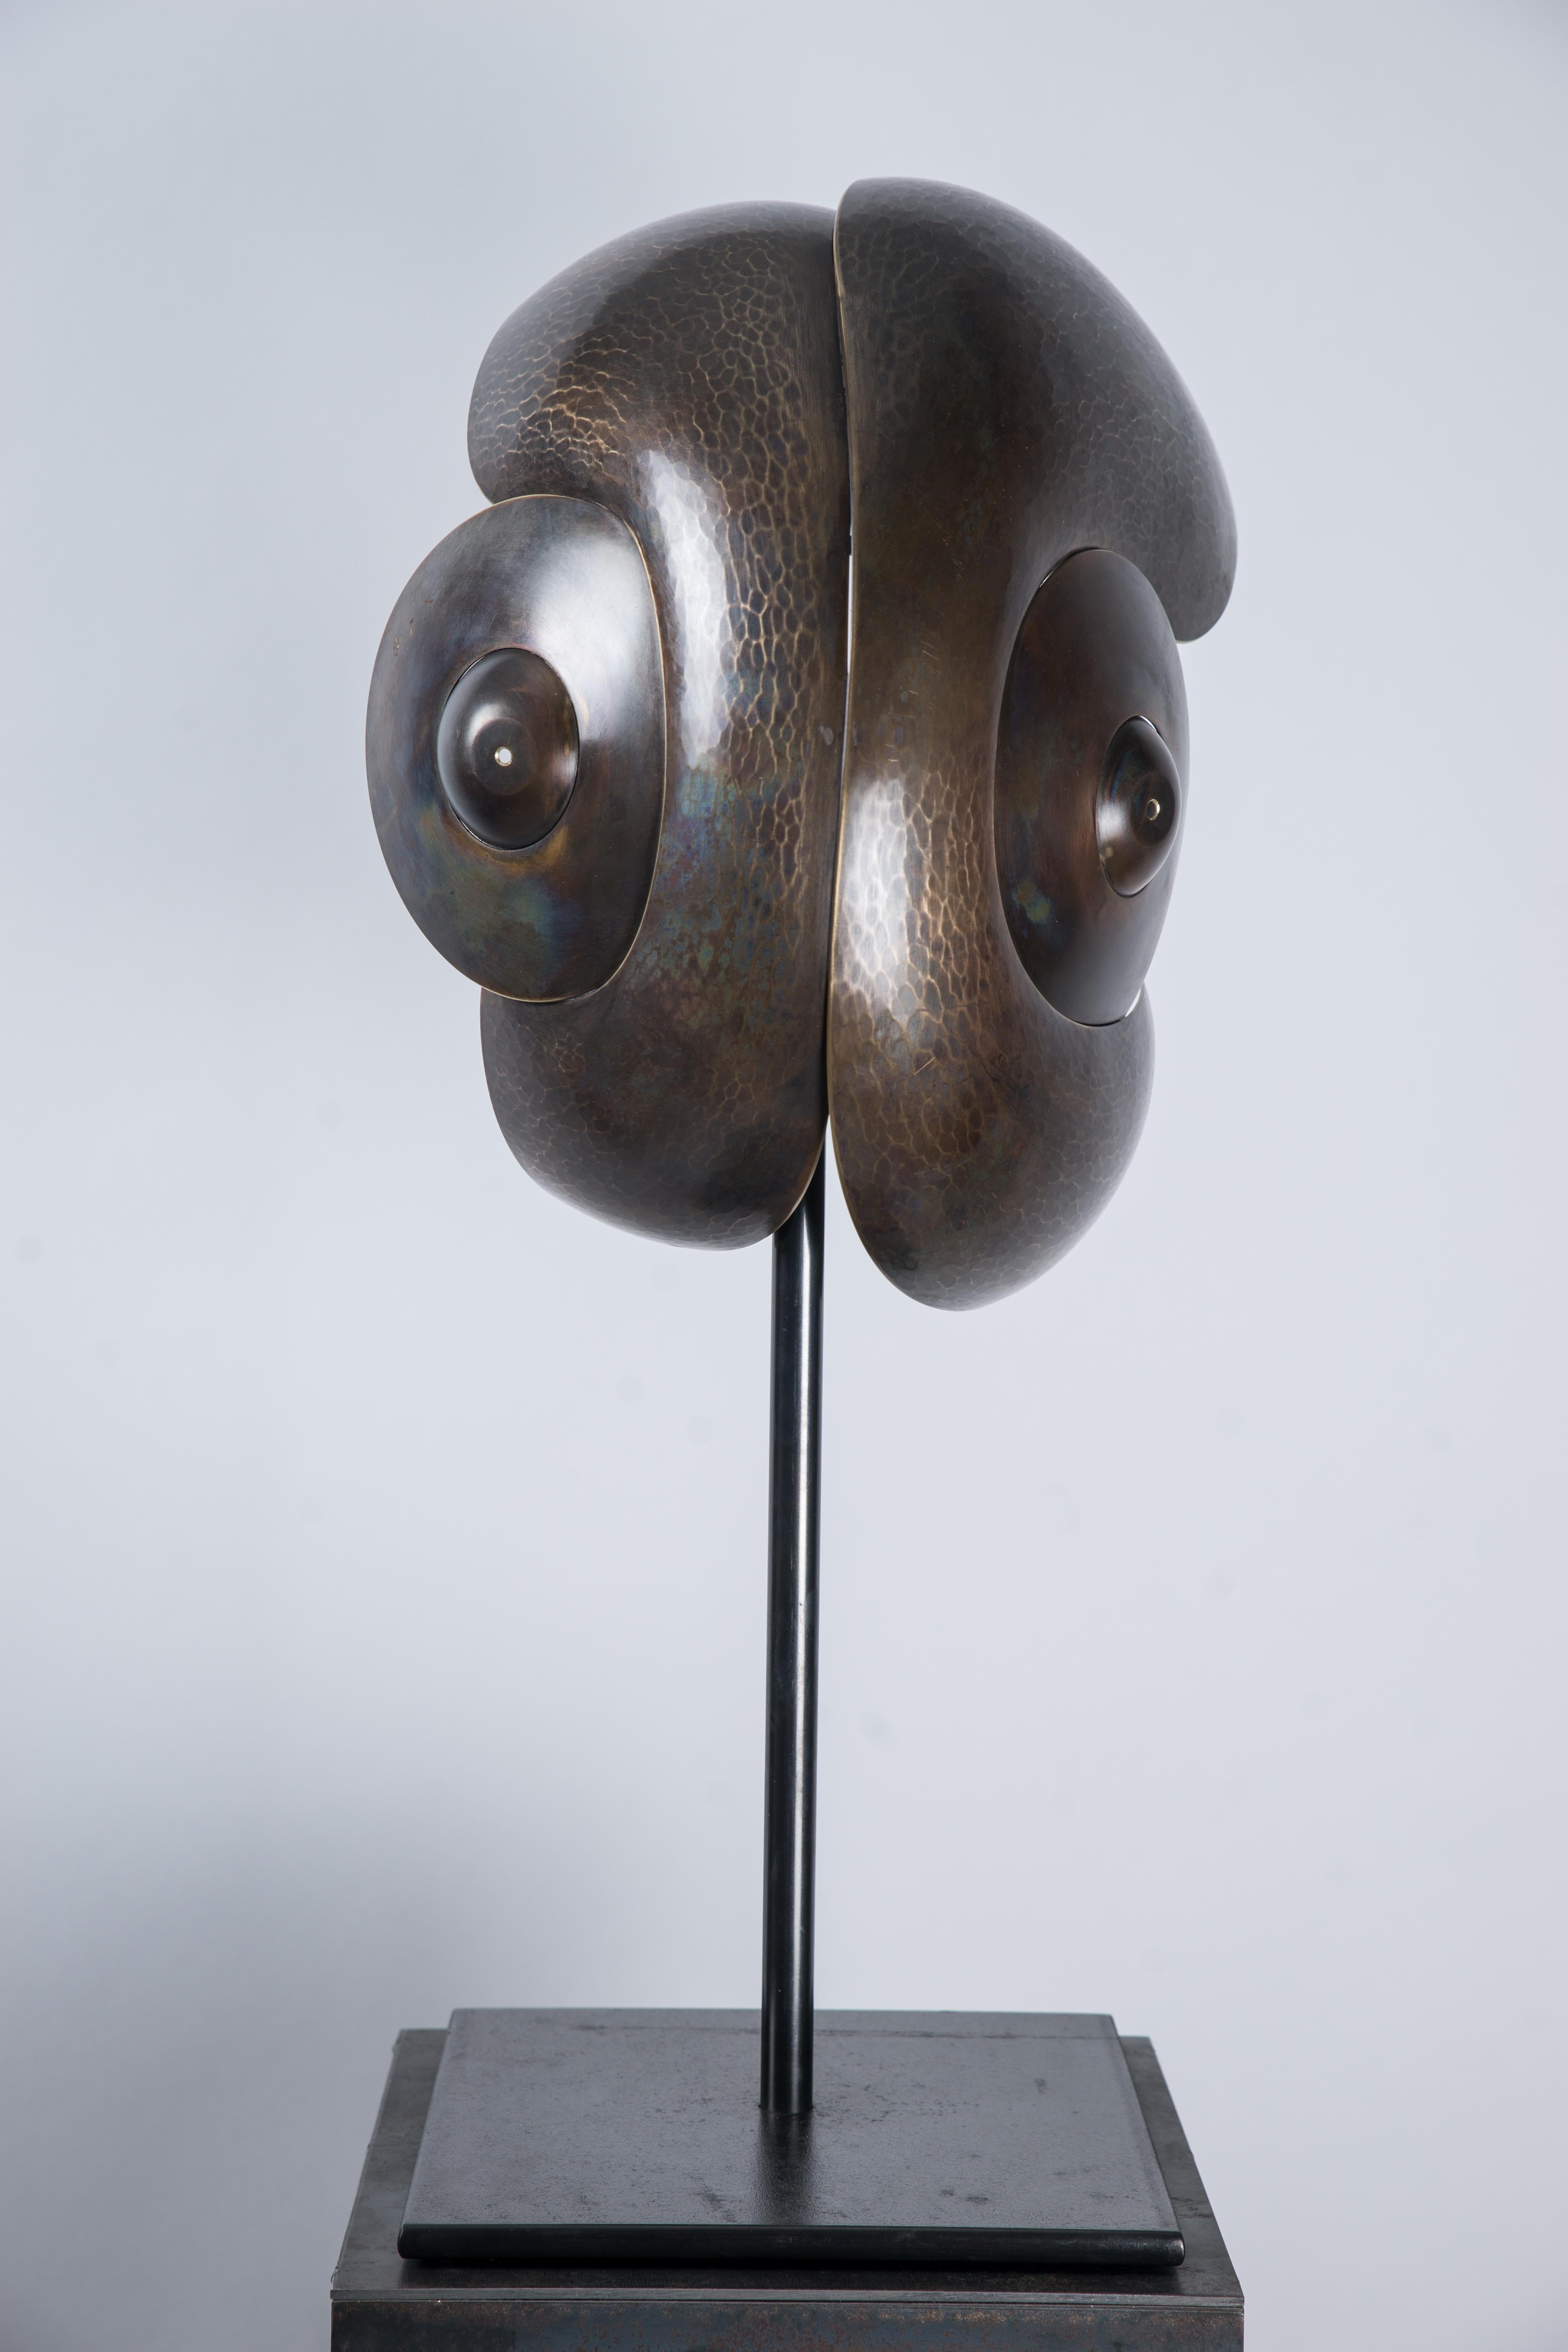 Elie Hirsch Abstract Sculpture - "Le Caméléon" Brass Sculpture